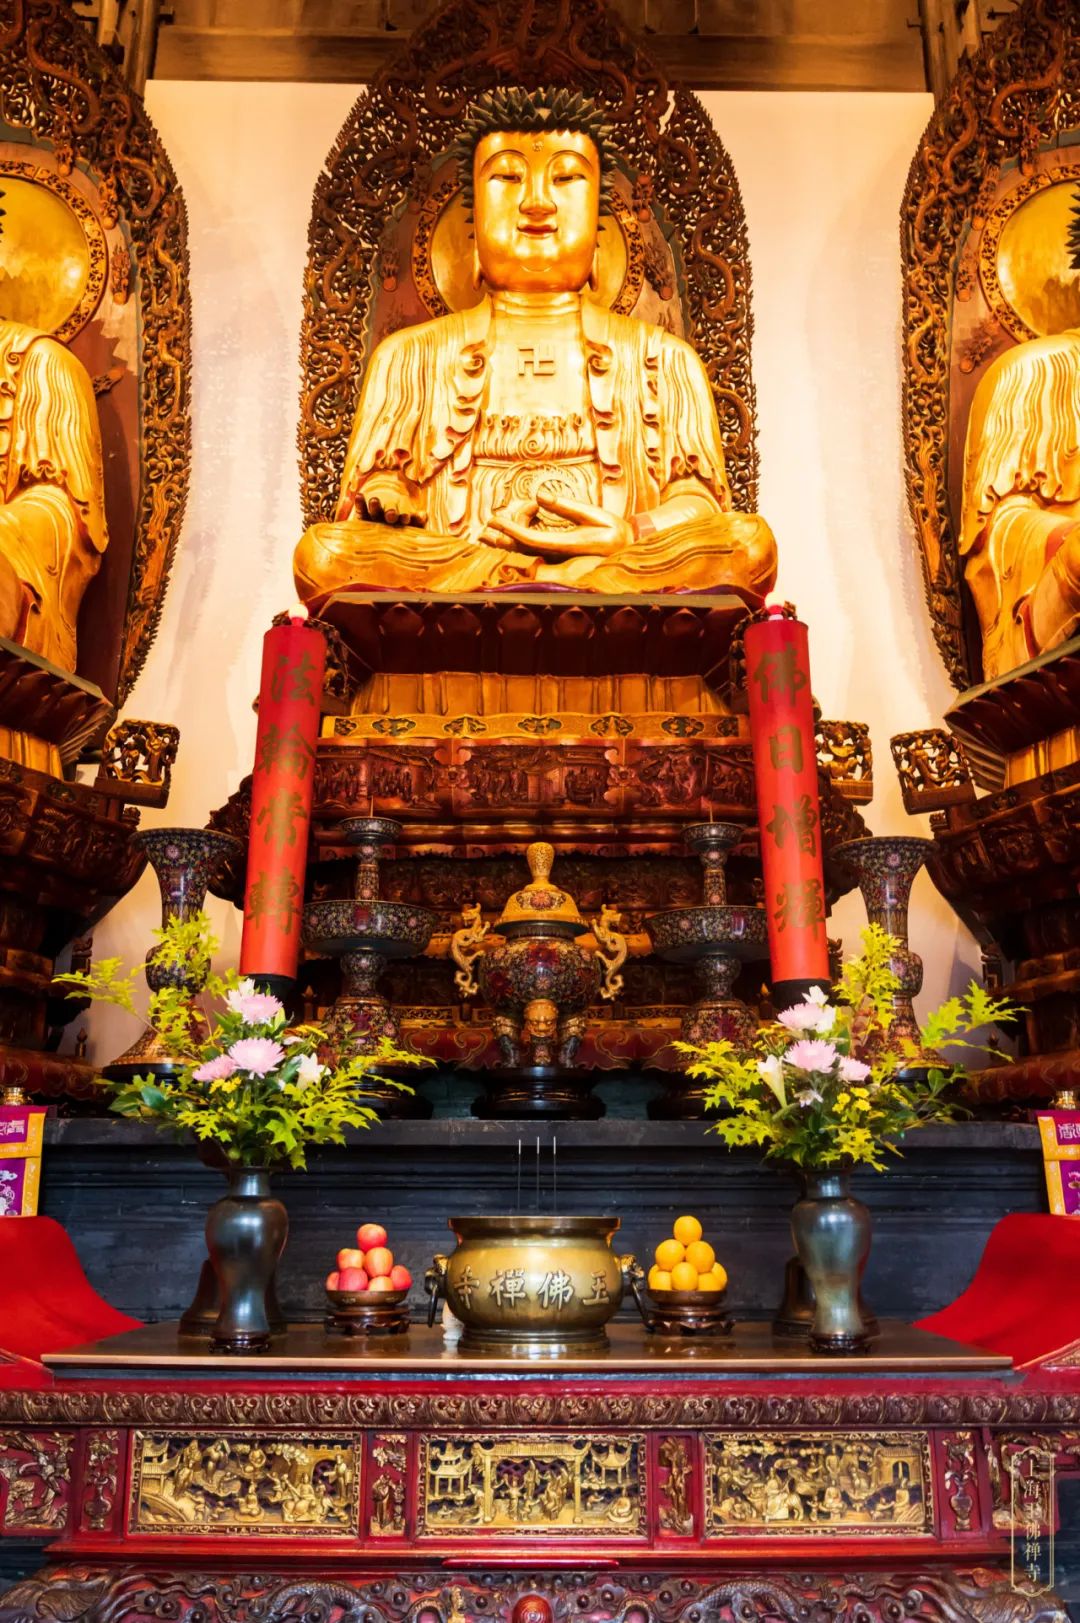 佛 雕像 泰国 佛教 宗教 亚洲 旅行图片下载 - 觅知网